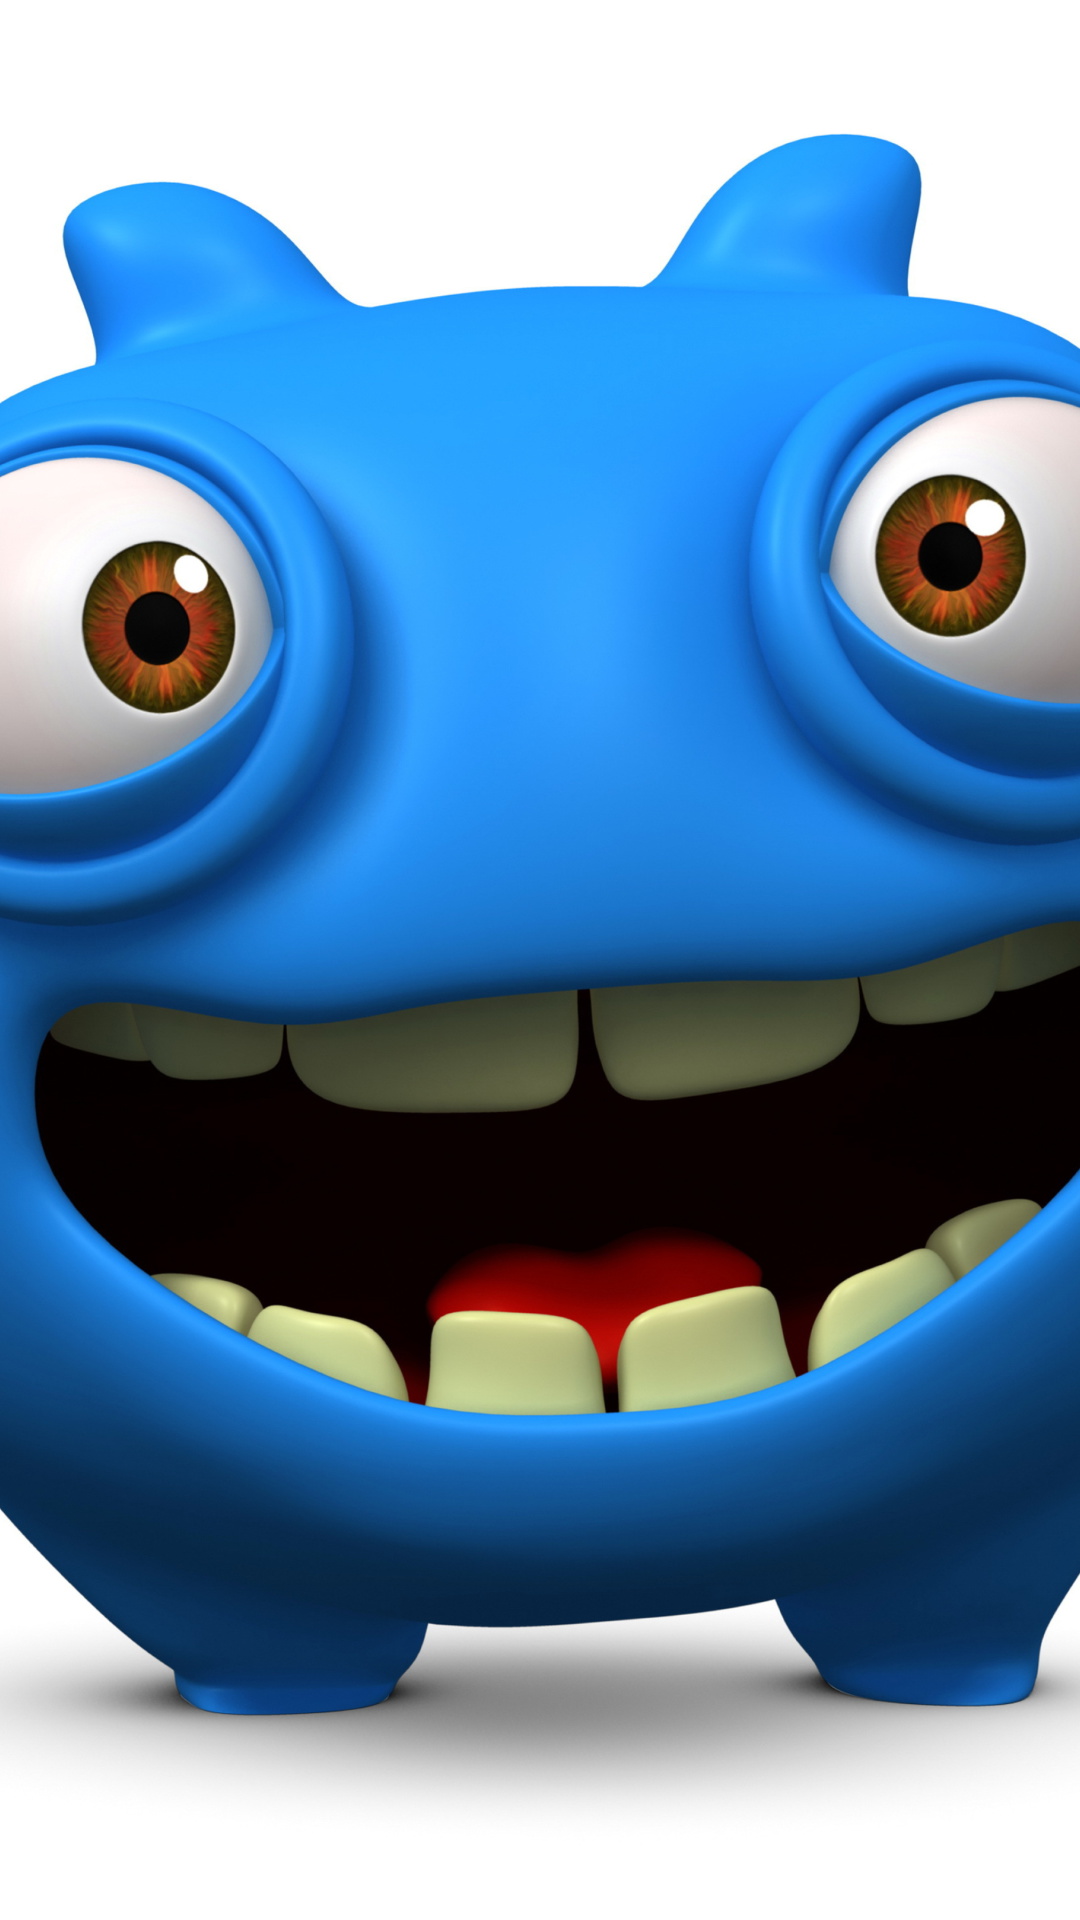 Cute Blue Cartoon Monster wallpaper 1080x1920